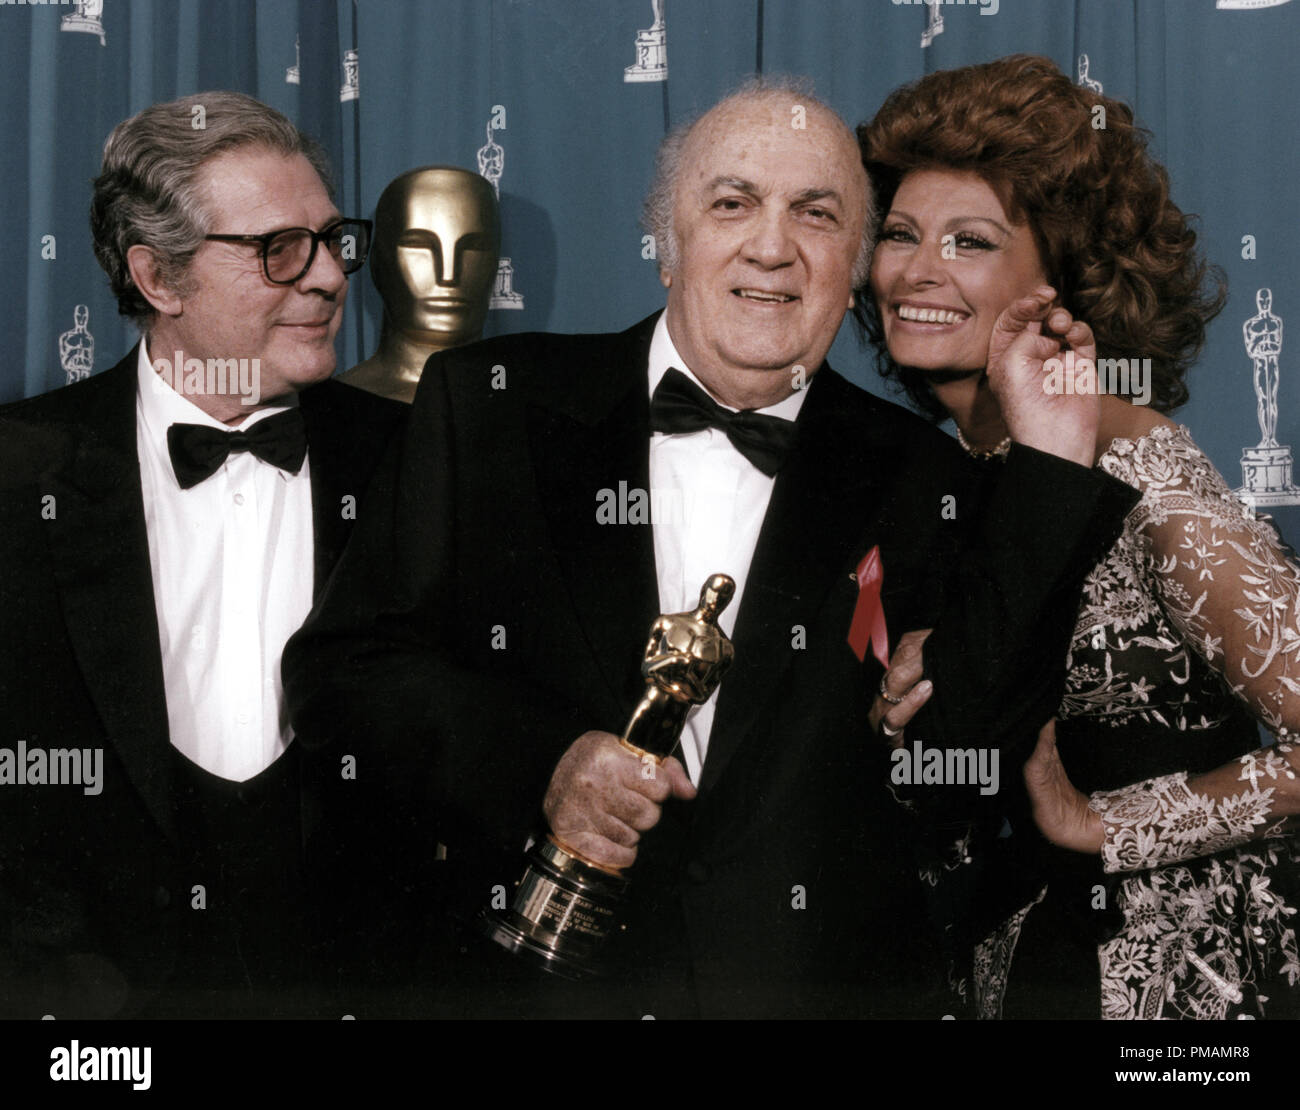 Frederico Fellini, Marcello Mastroianni, Sophia Loren en la 65ª Anual de los Premios de la Academia, 1993 Archivo de referencia # 33505 012tha Foto de stock